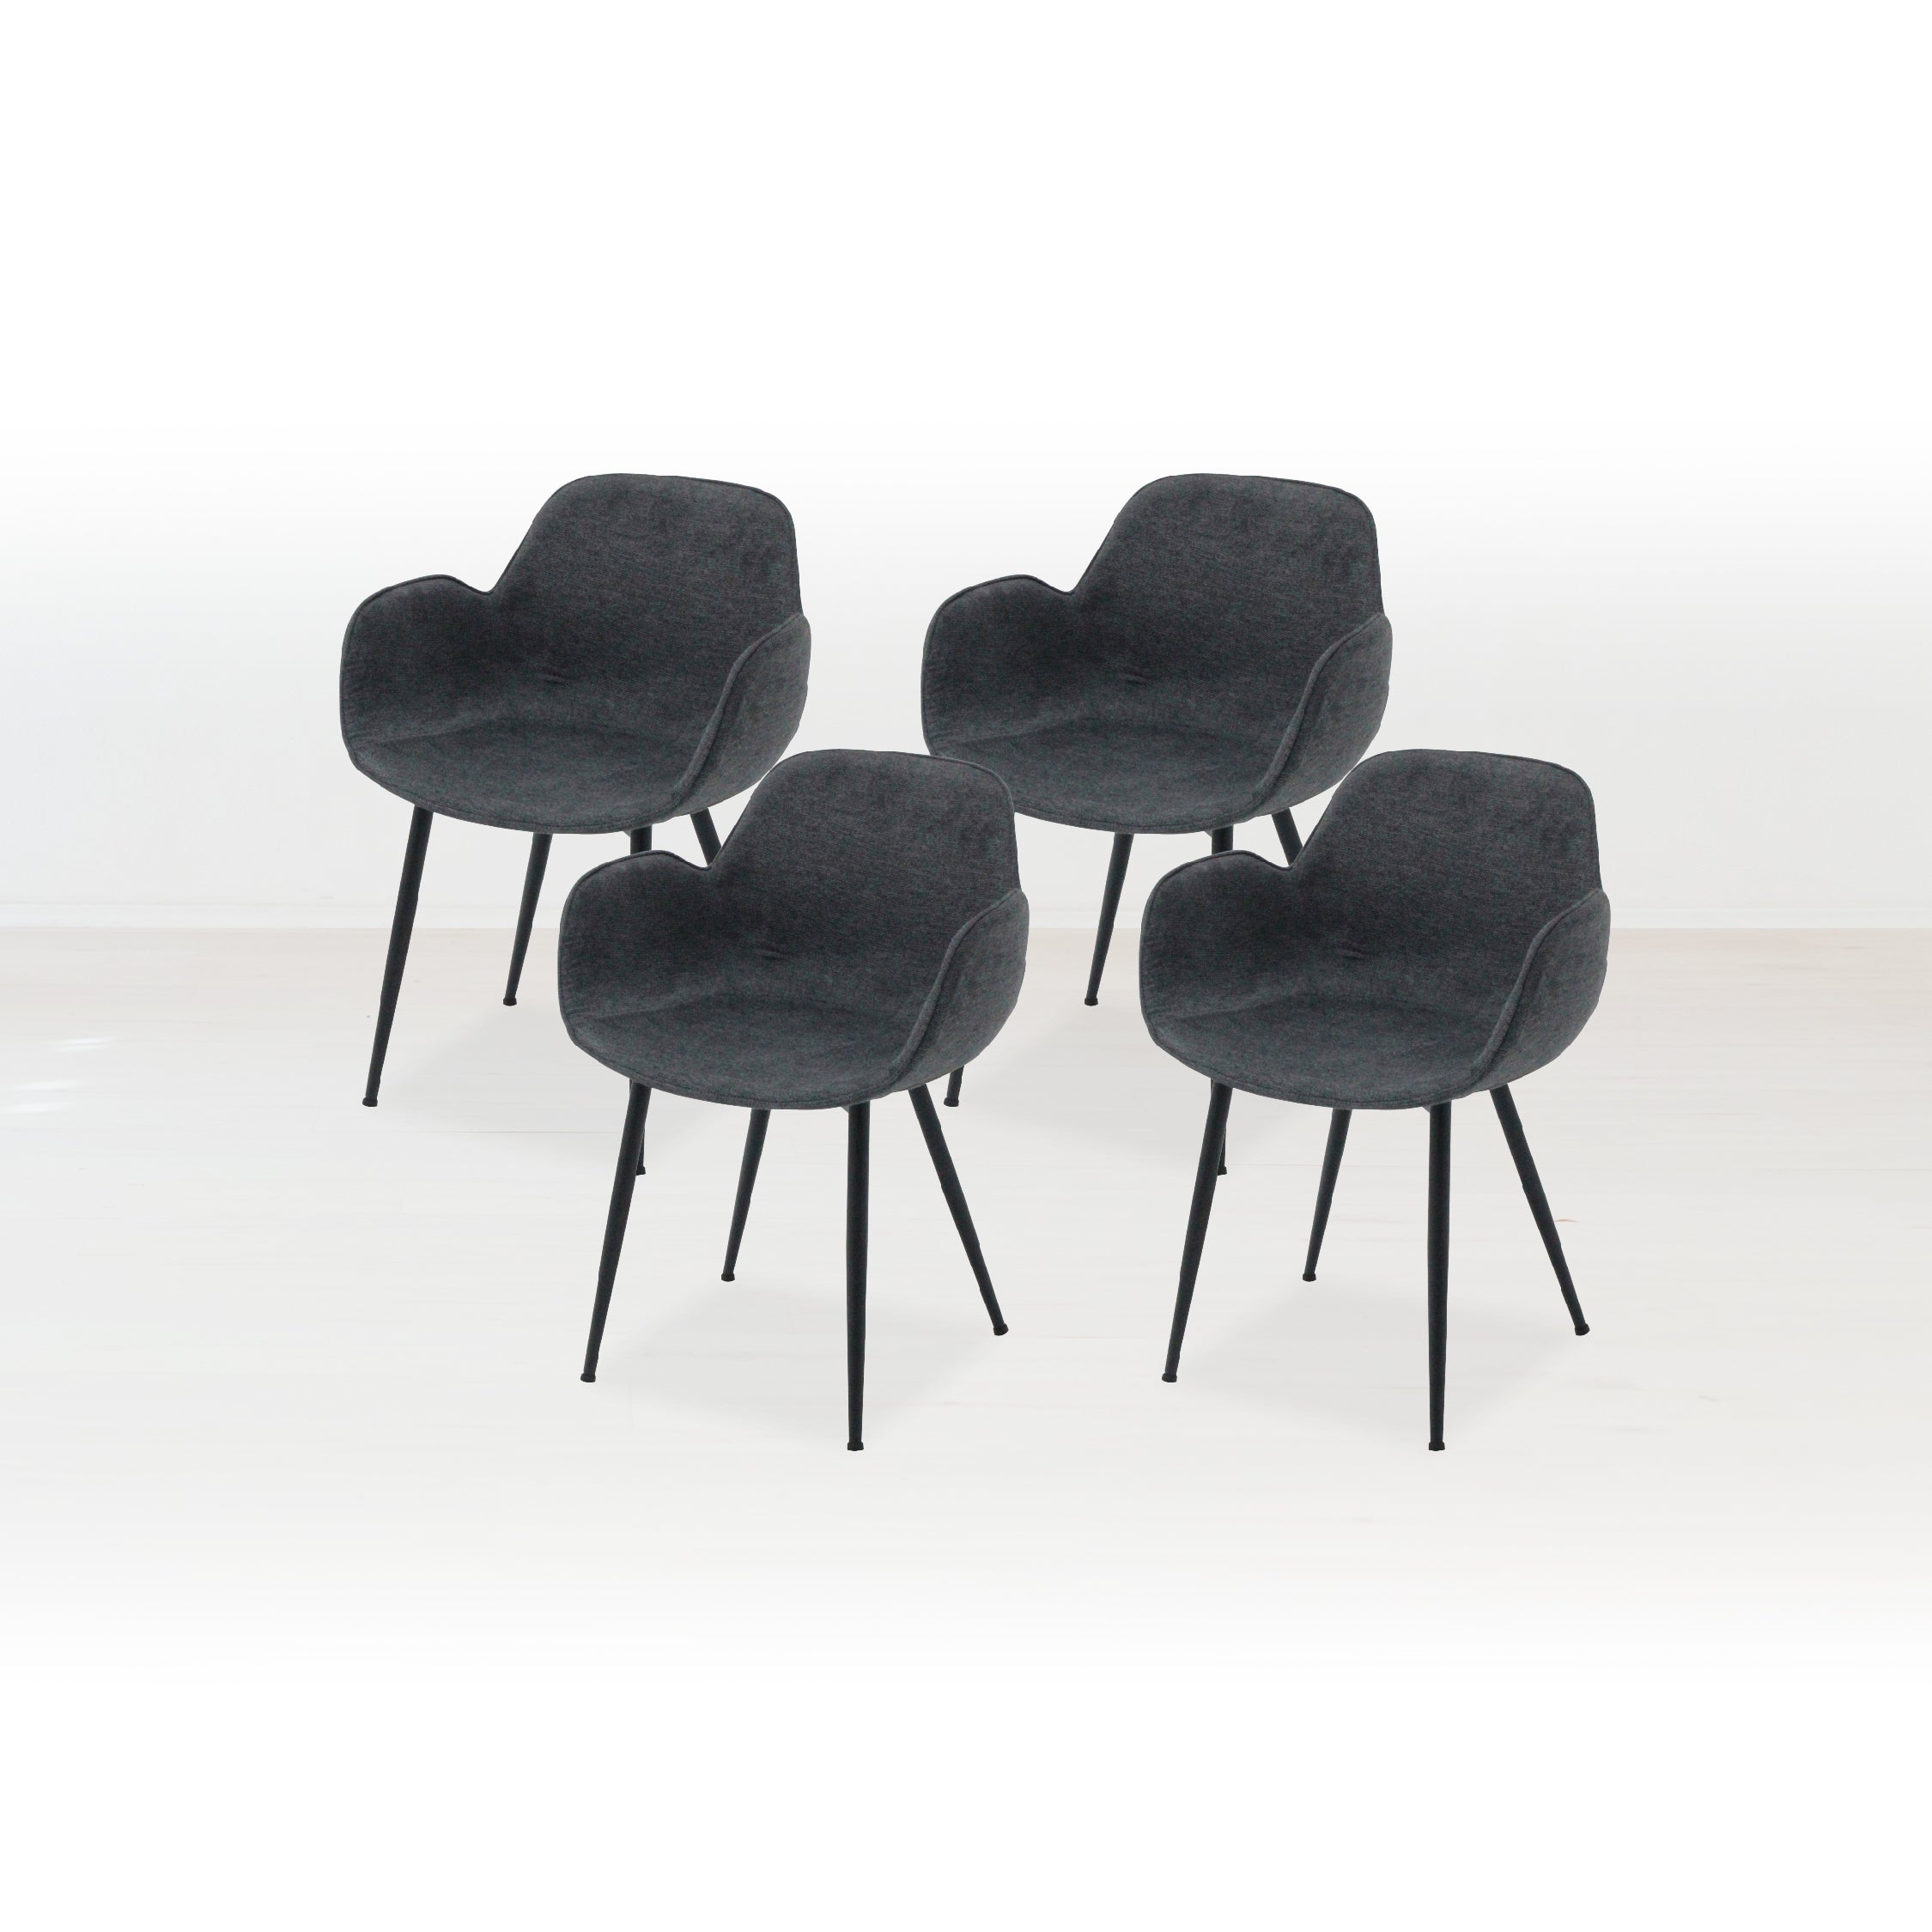 เซ็ตเก้าอี้ 4 ตัว รุ่น Teller สีเทาดำ01